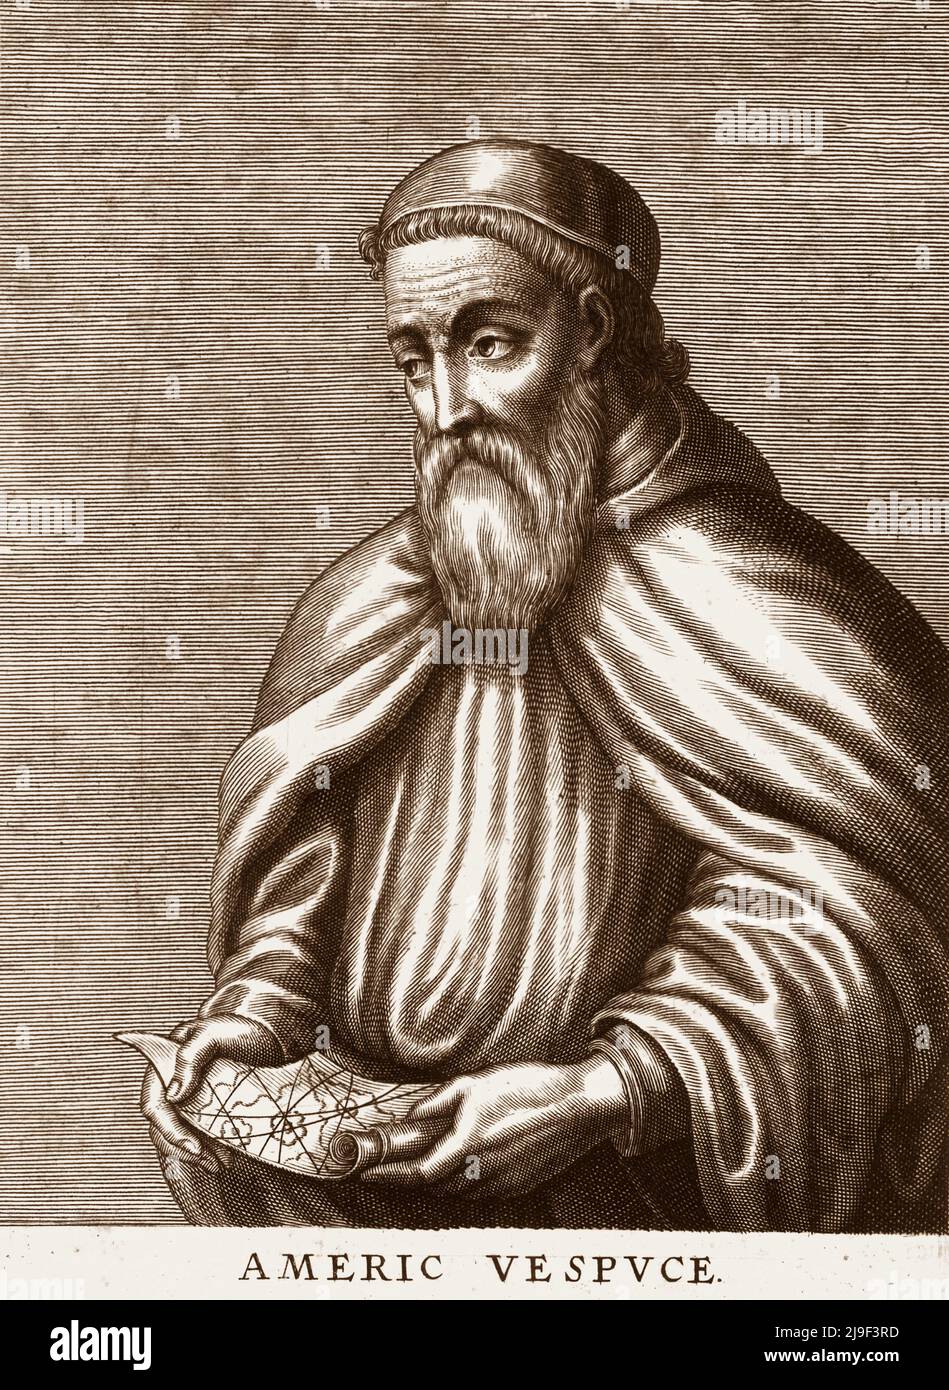 Retrato grabado de Amerigo Vespucci. Amerigo Vespucci (1451-1512) fue un comerciante italiano, explorador, y navegante de la República de Florencia, Foto de stock